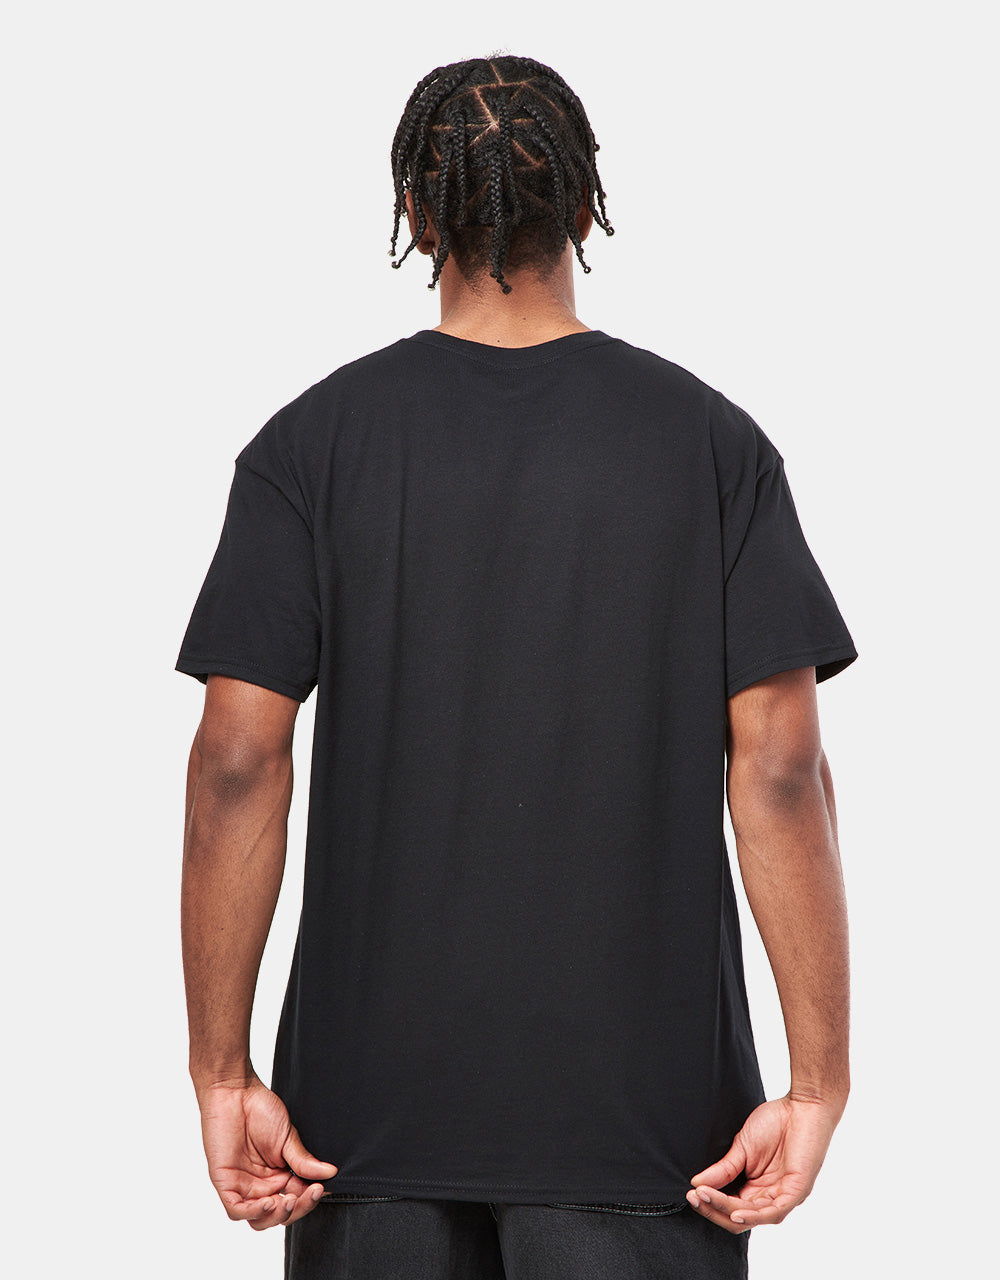 Anti Hero Eagle T-Shirt - Black/Black Multi